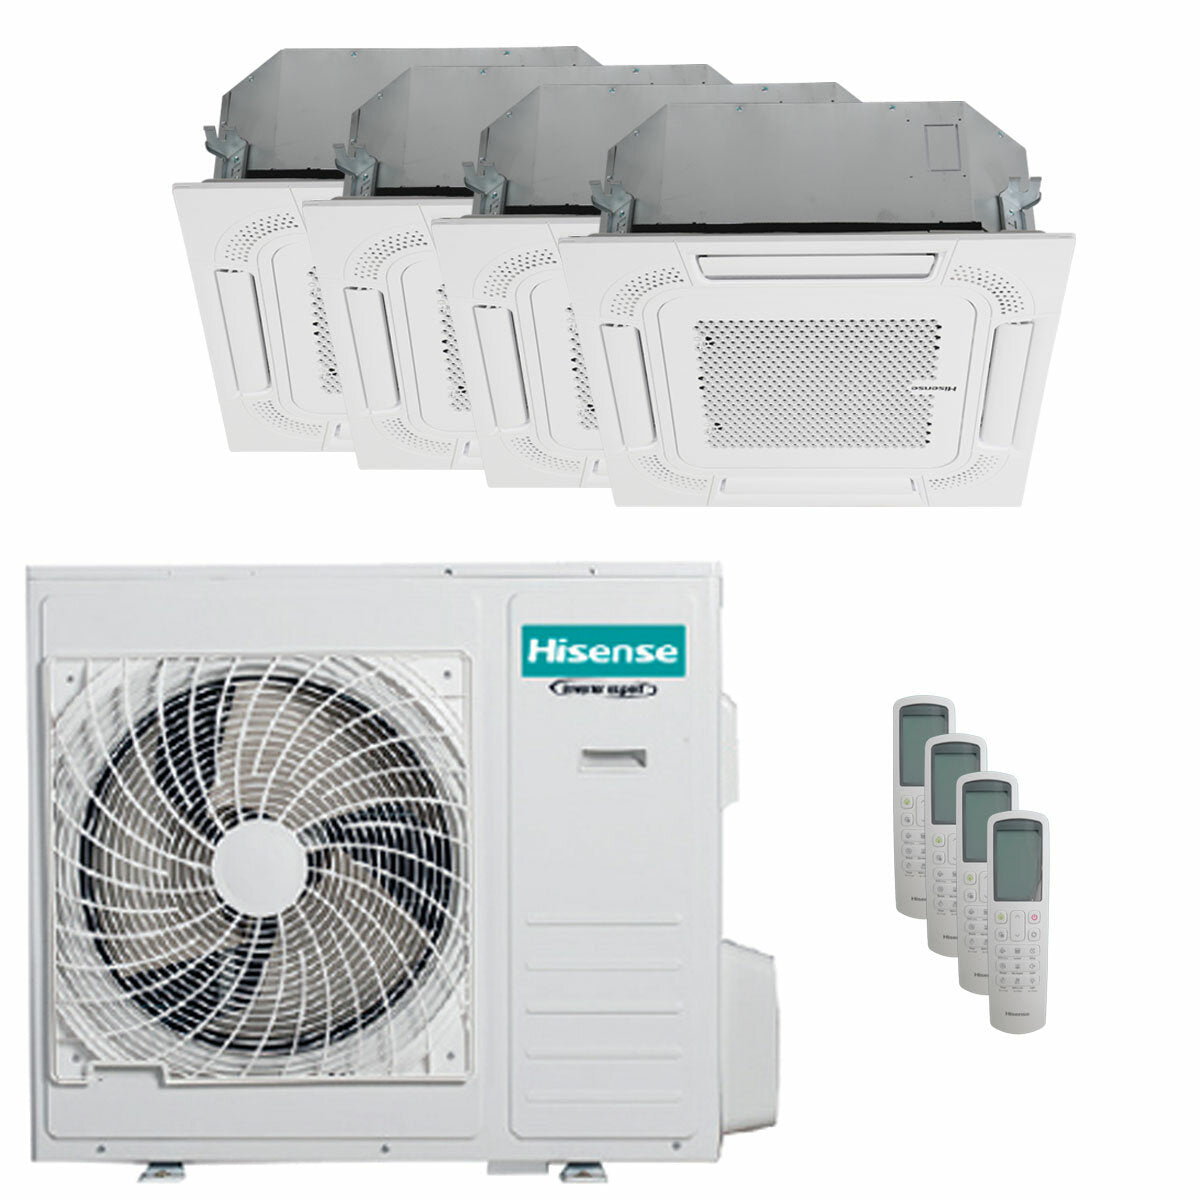 Hisense air conditioner Cassette ACT quadri split 9000+9000+9000+18000 BTU inverter A++ outdoor unit 10 kW